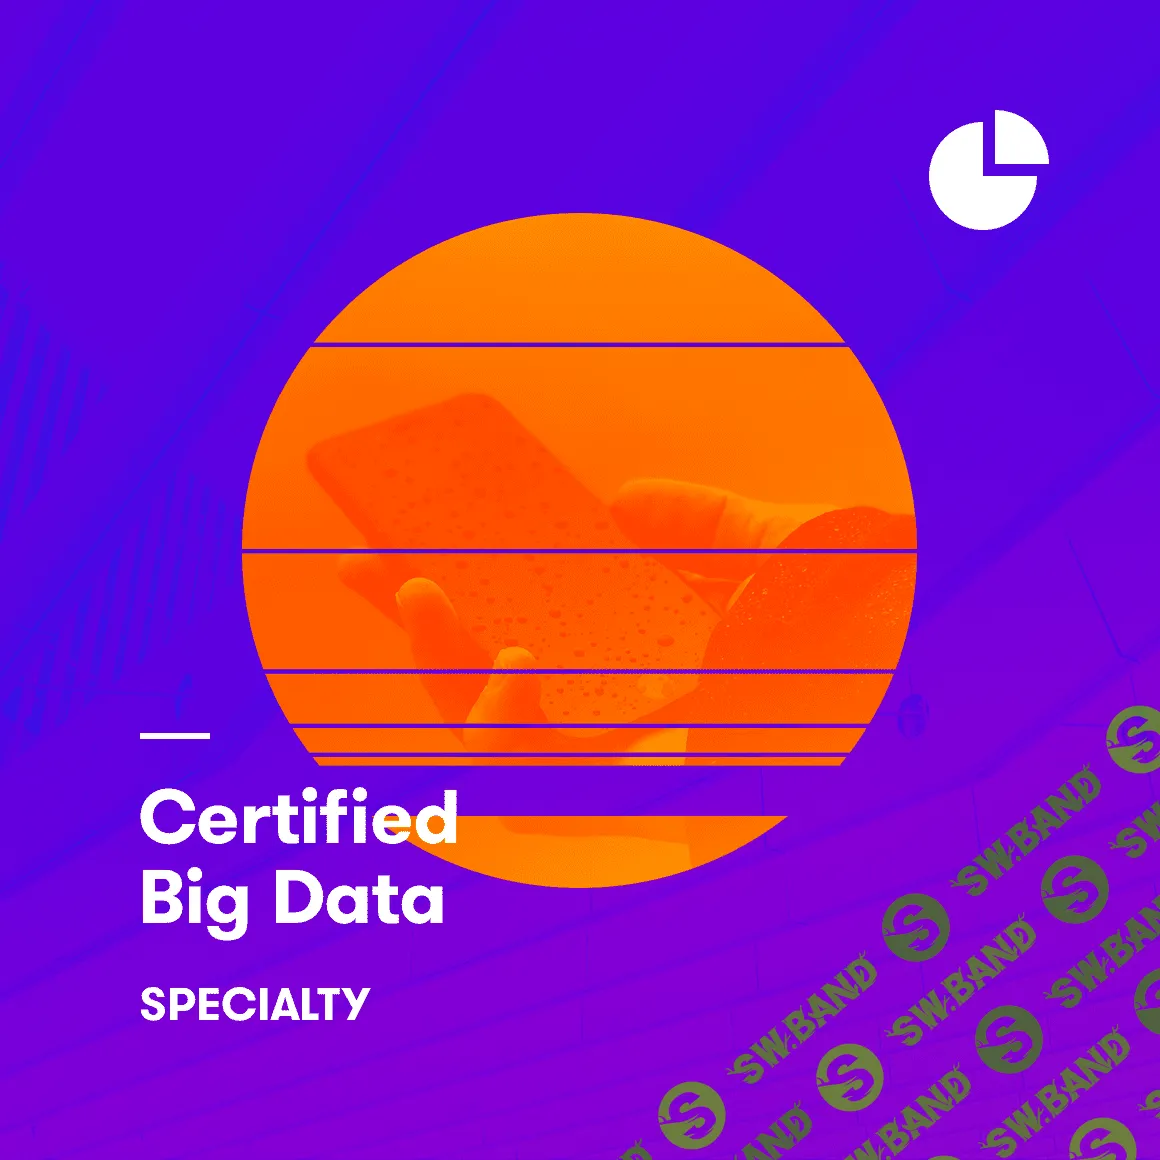 [acloud.guru] AWS Certified Big Data - Specialty 2019